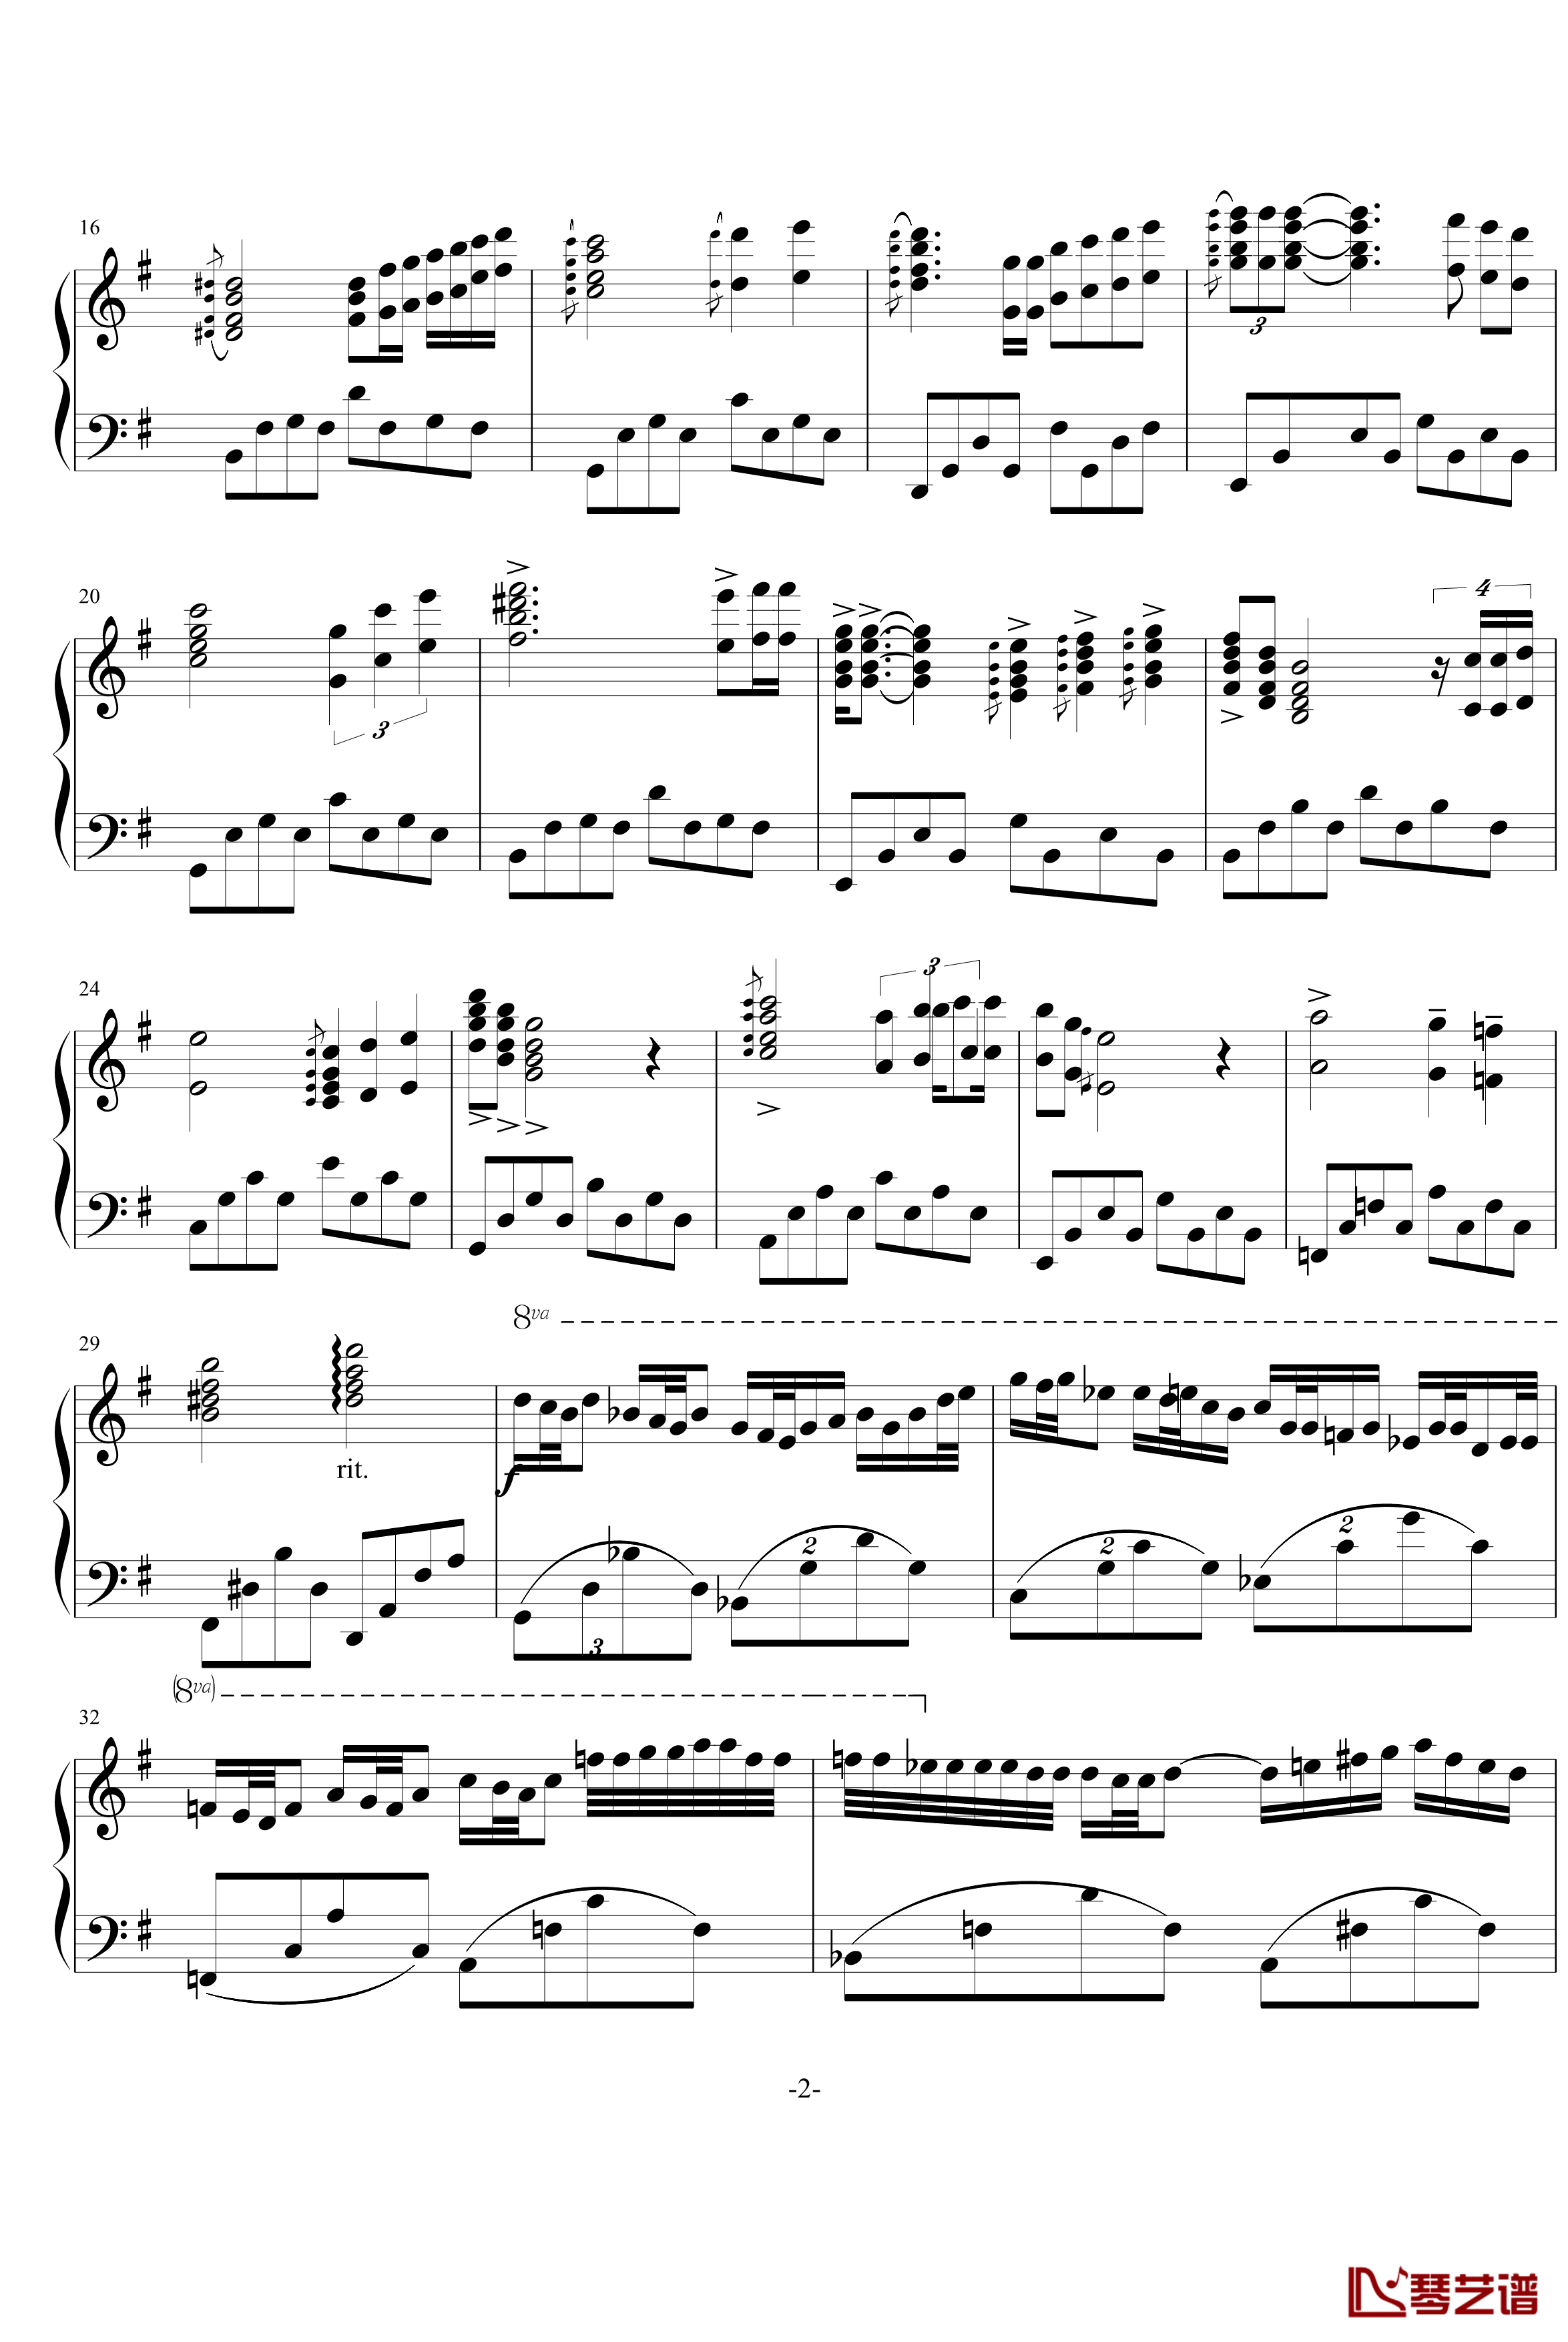 星空钢琴谱-Swenl特别版-克莱德曼